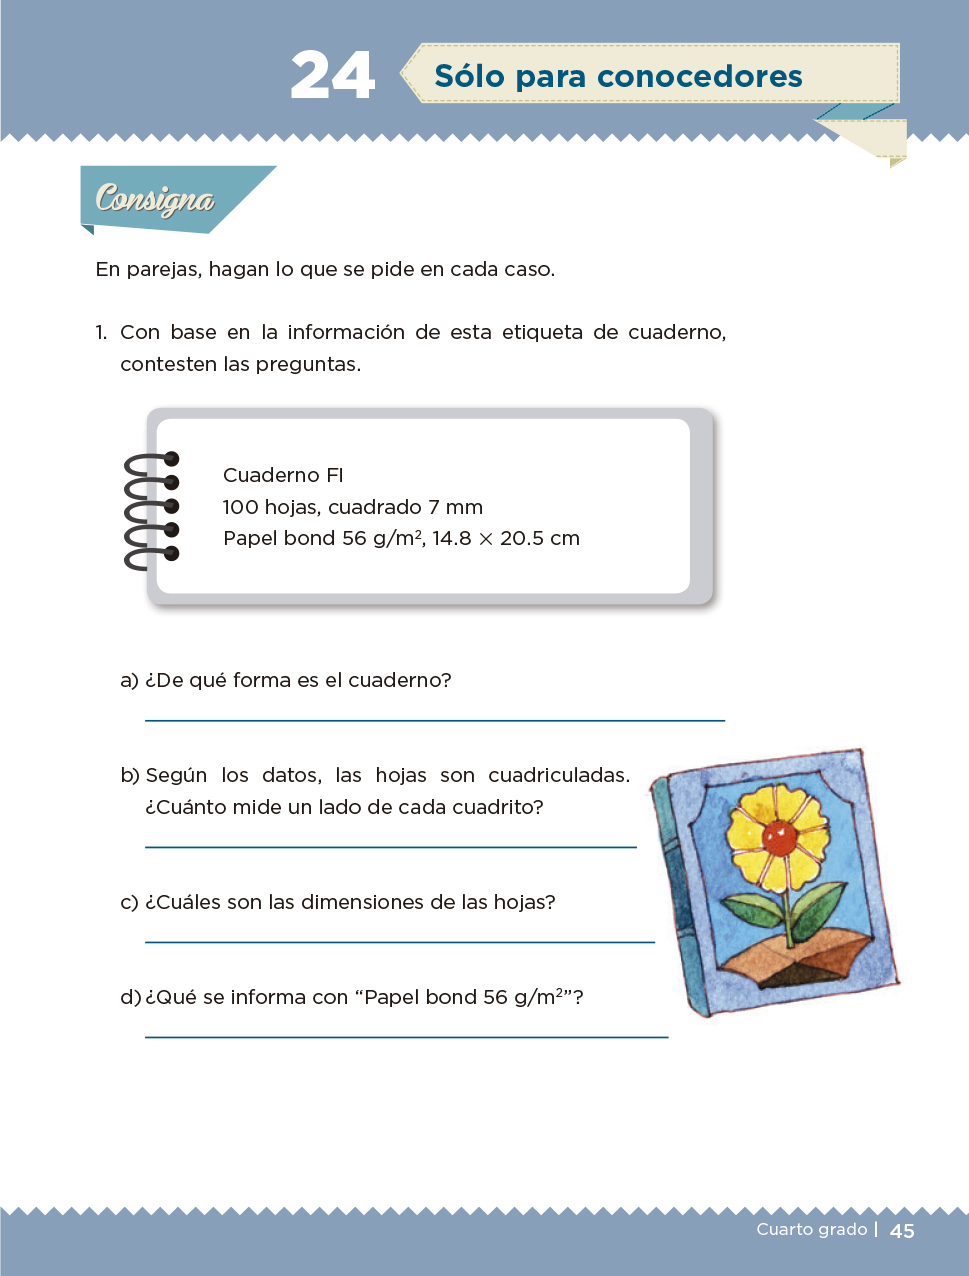 Desafios Matematicos 4 Grado - Libro De Matematicas 4 ...